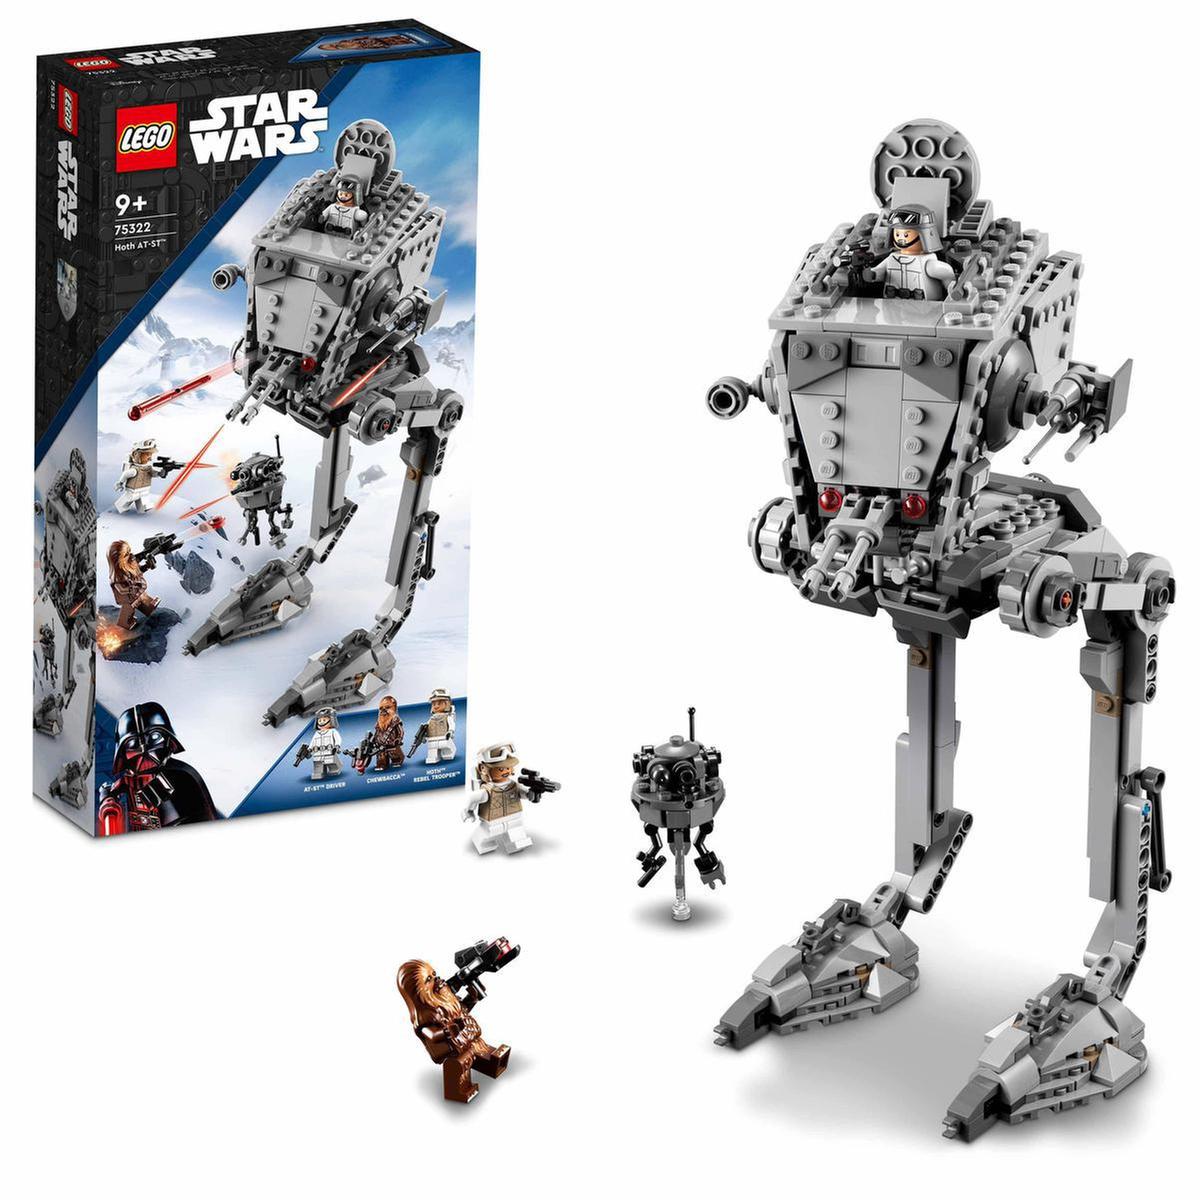 LEGO Star Wars - AT-ST de Hoth - 75322 | Lego Star Wars | Toys"R"Us España